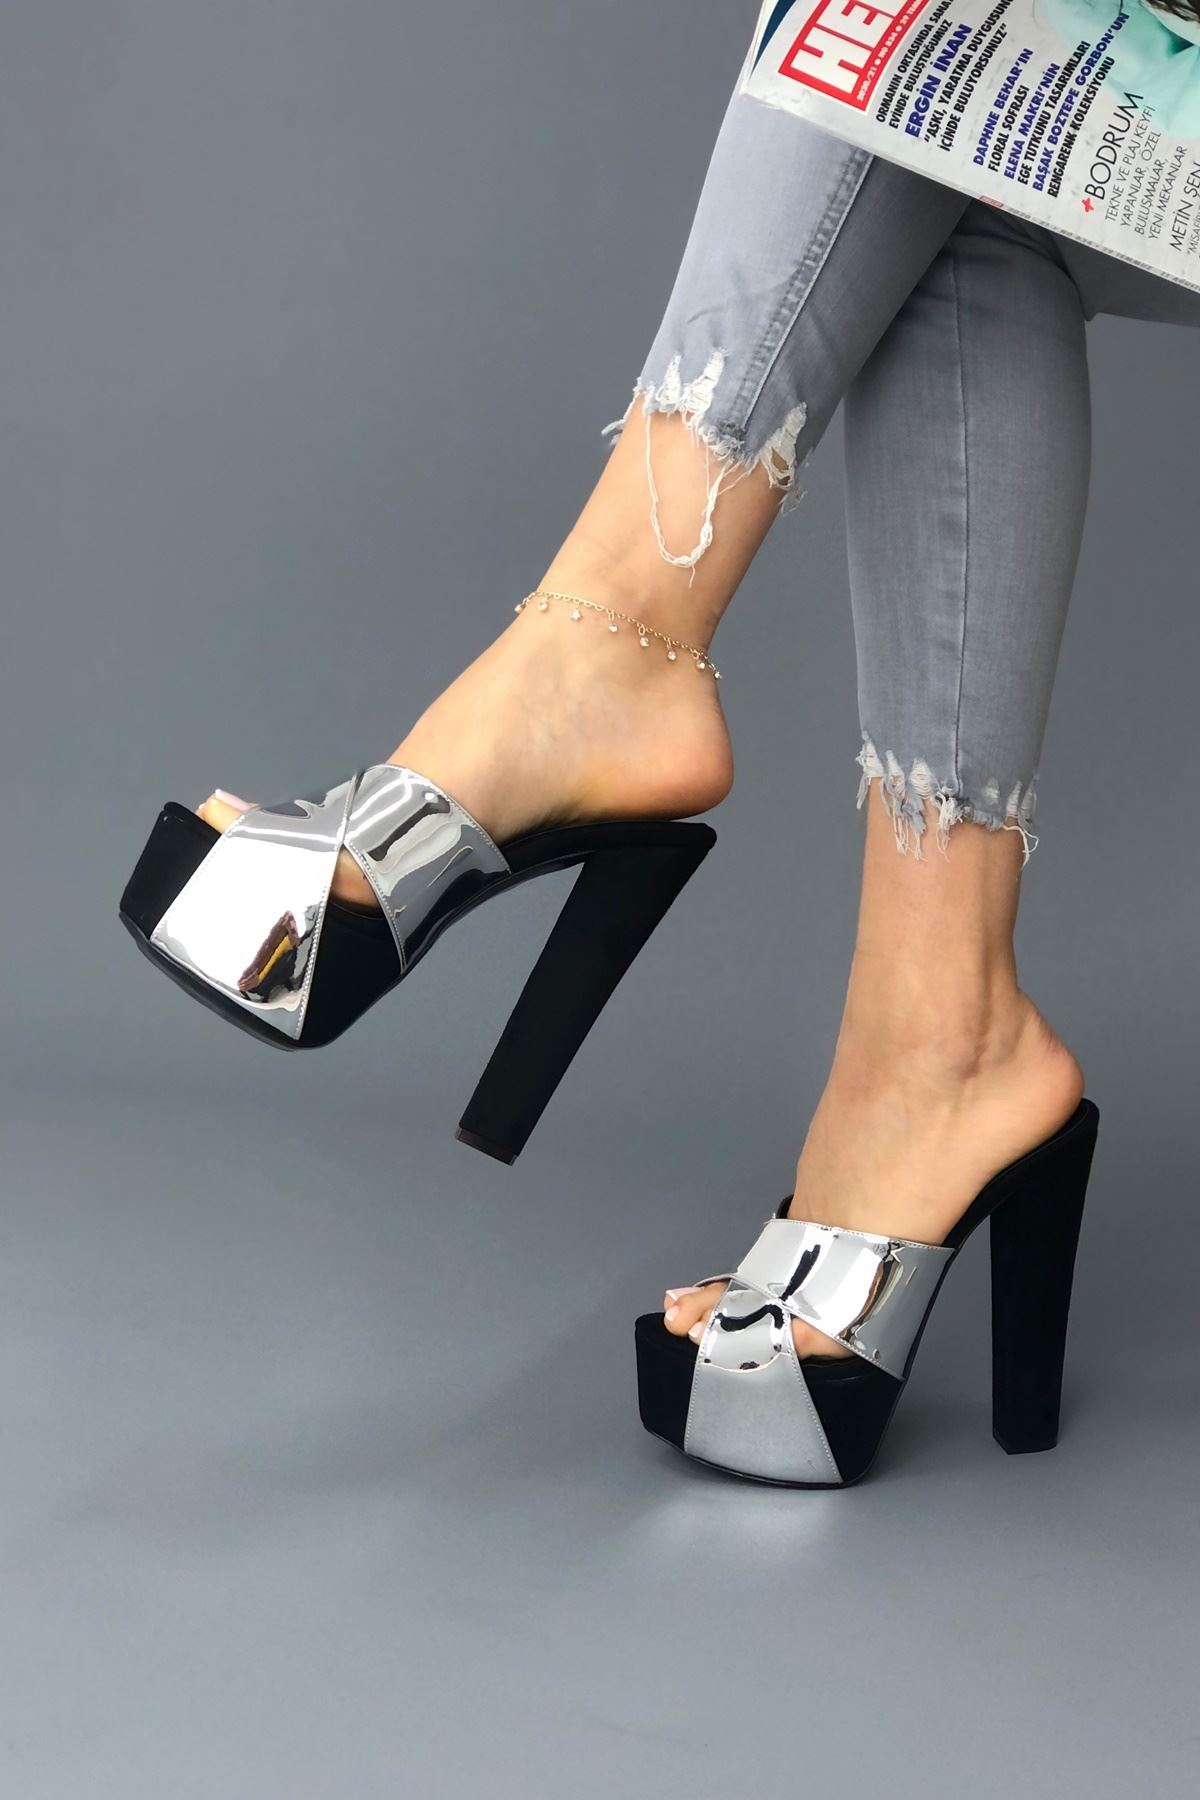 Mulan Siyah - Gümüş parlak Kadın Yüksek Topuklu Ayakkabı